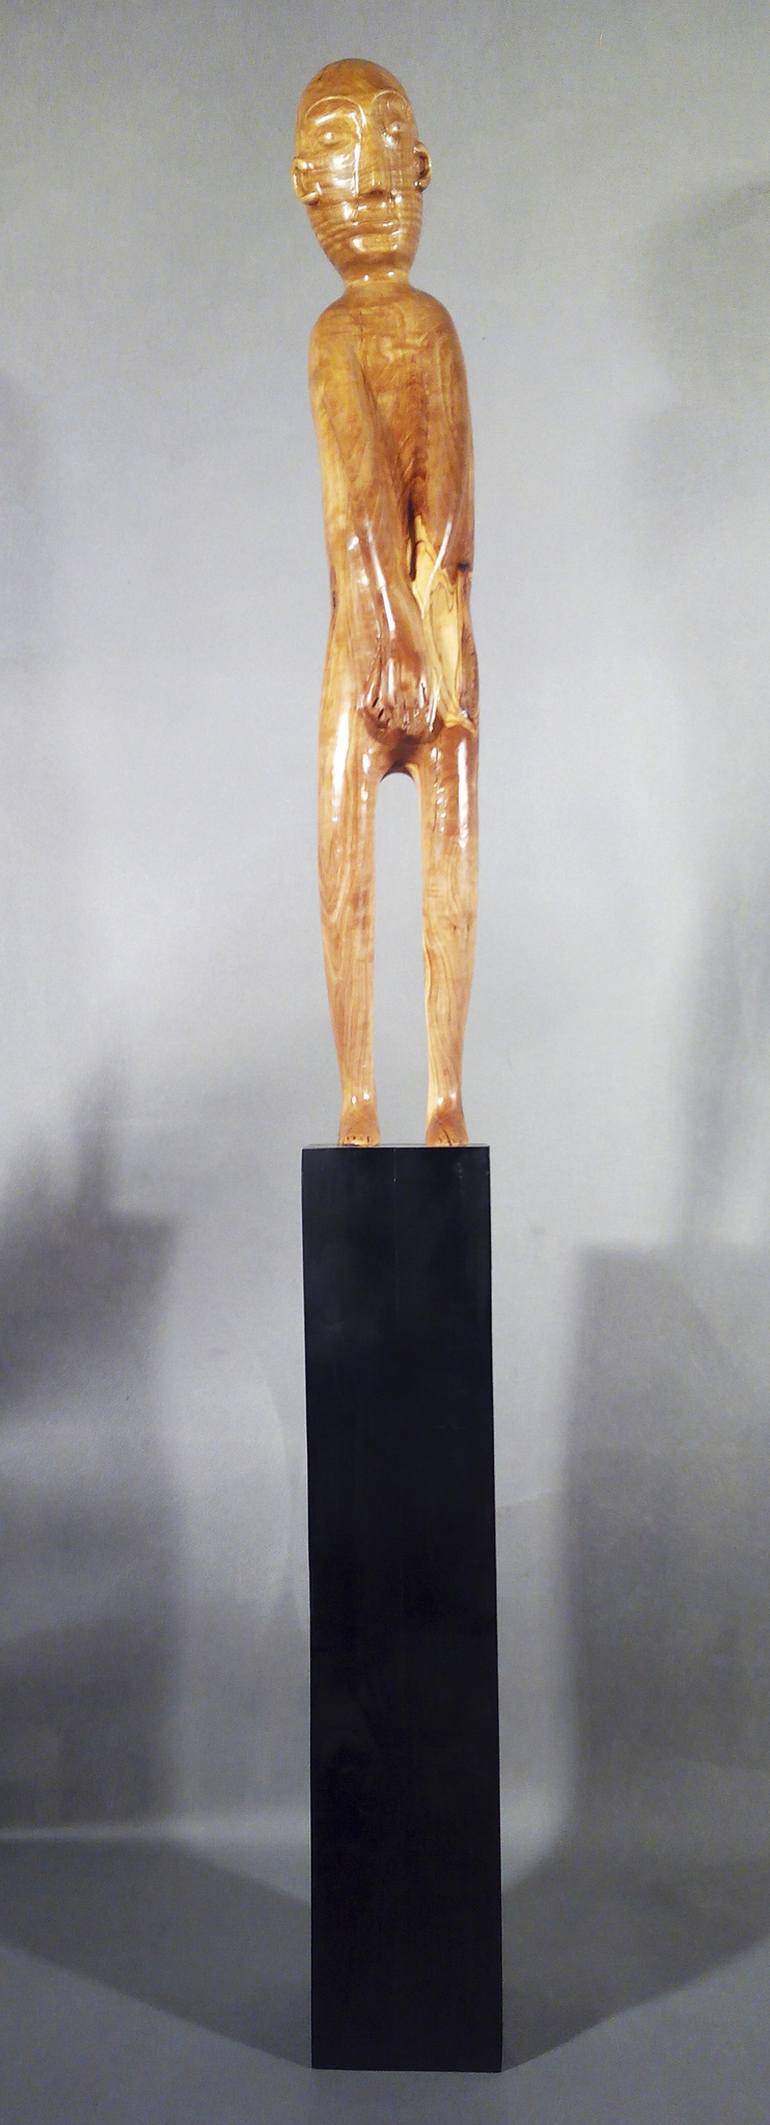 Original Expressionism Body Sculpture by Juan Pedrosa